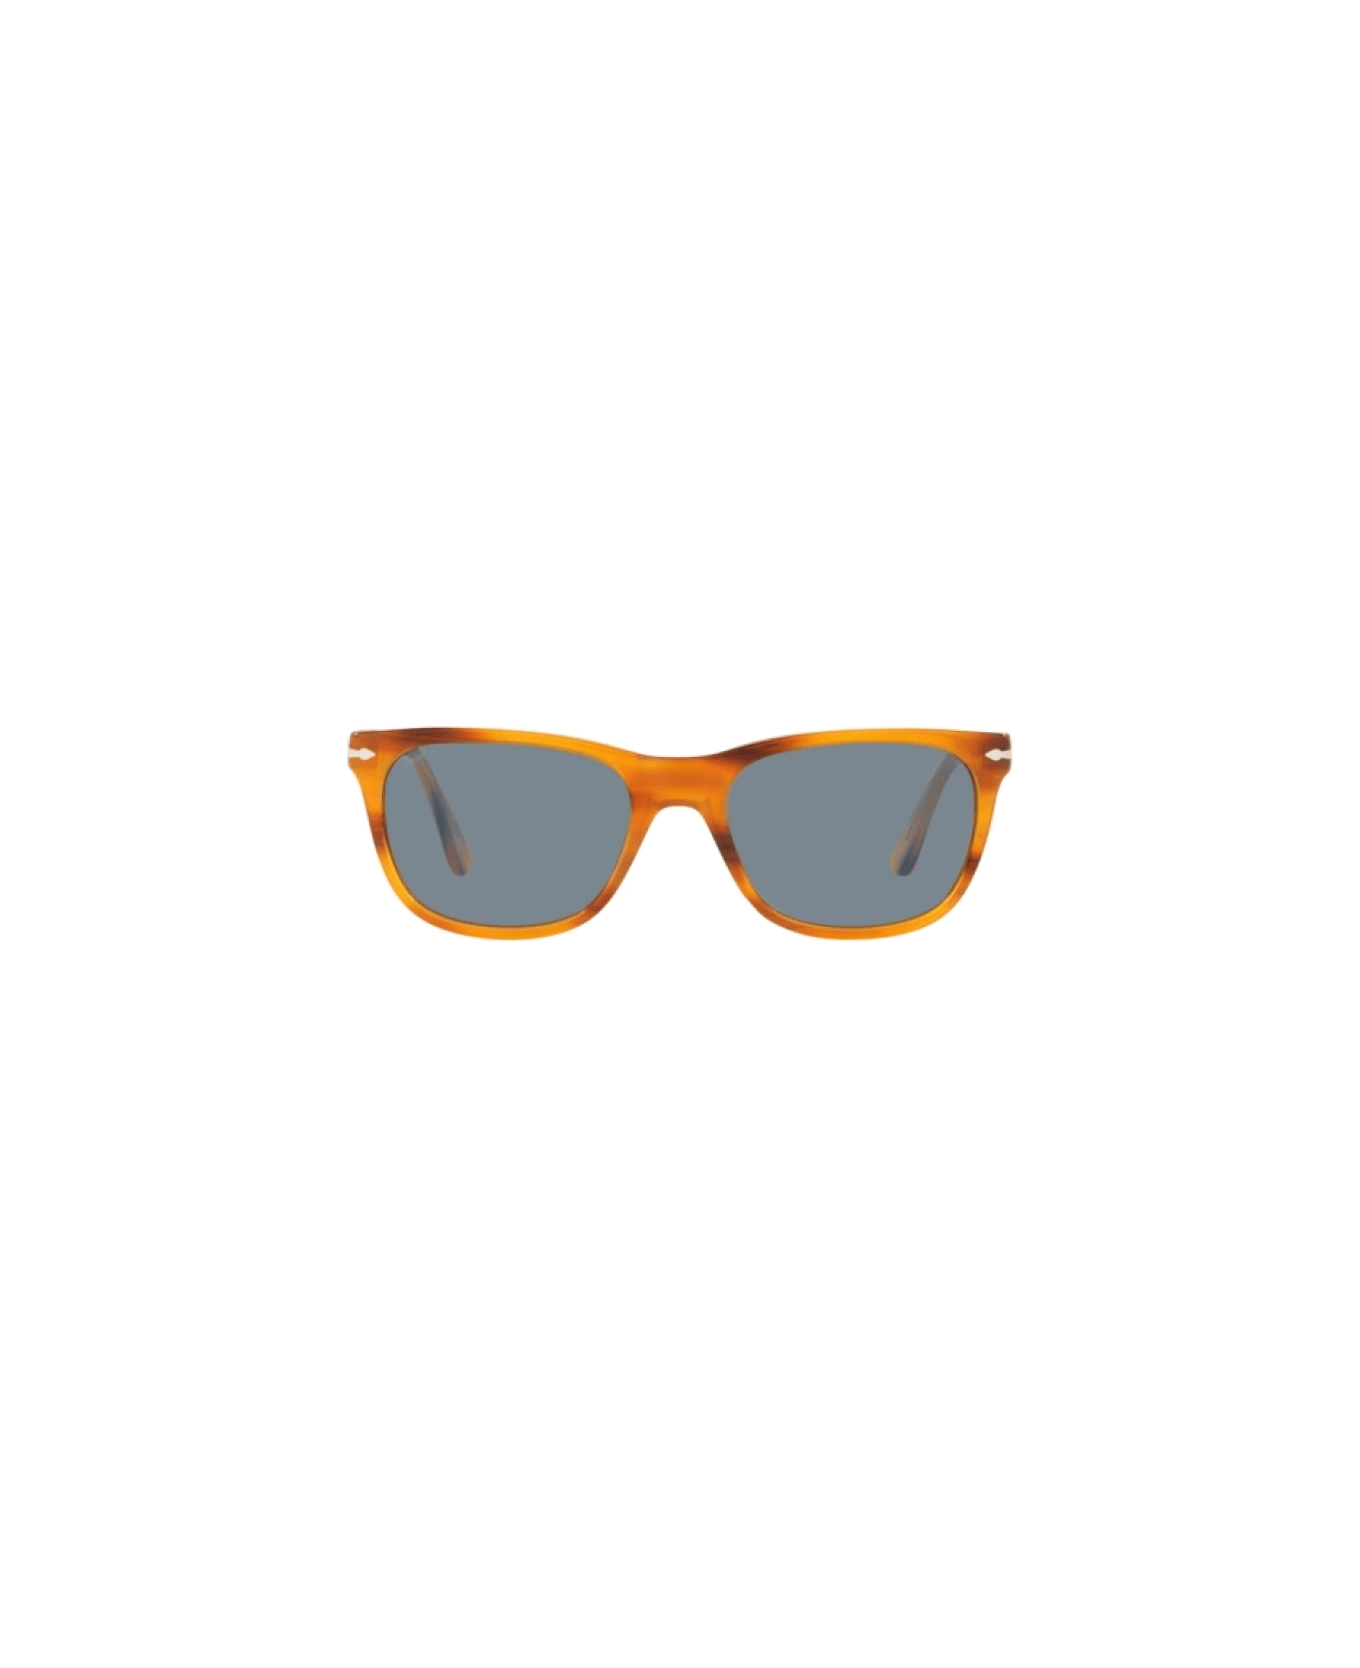 Persol po3291s 960/56 Sunglasses - Tartarugato chiaro